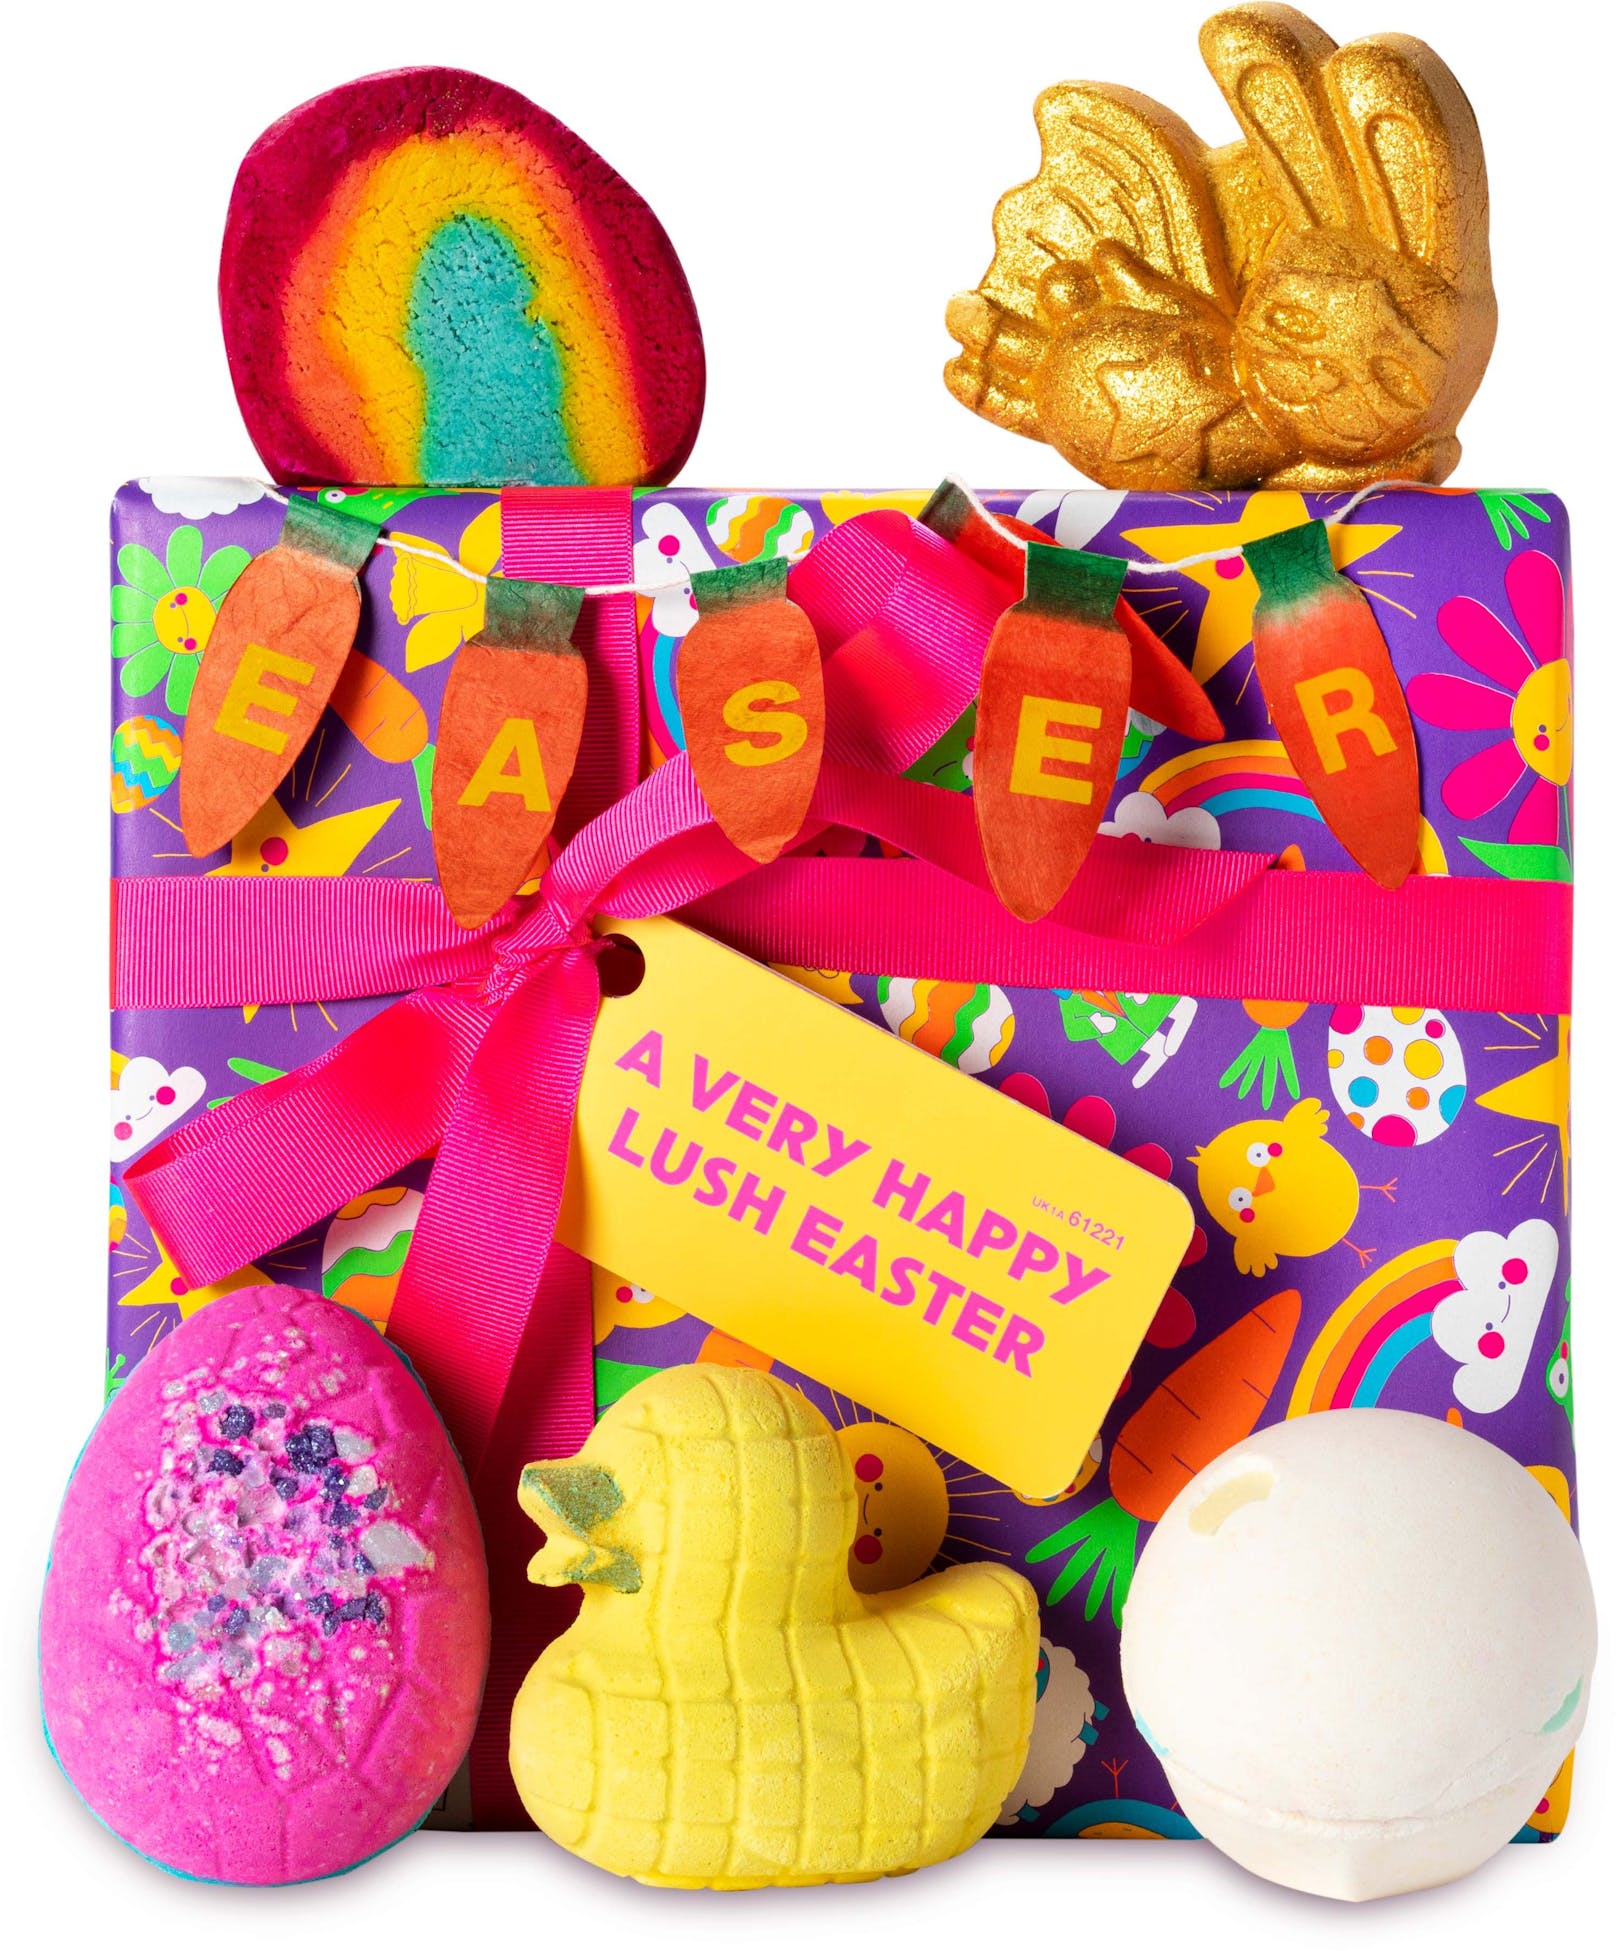 Für eine besondere Osterfei-ei-ei-er! Eine spaßbepackte Box voller Schätze zum Baden, wenn die Osterglocken bimmeln! "A Very Happy Lush Easter" um 40,95 Euro bei Lush.